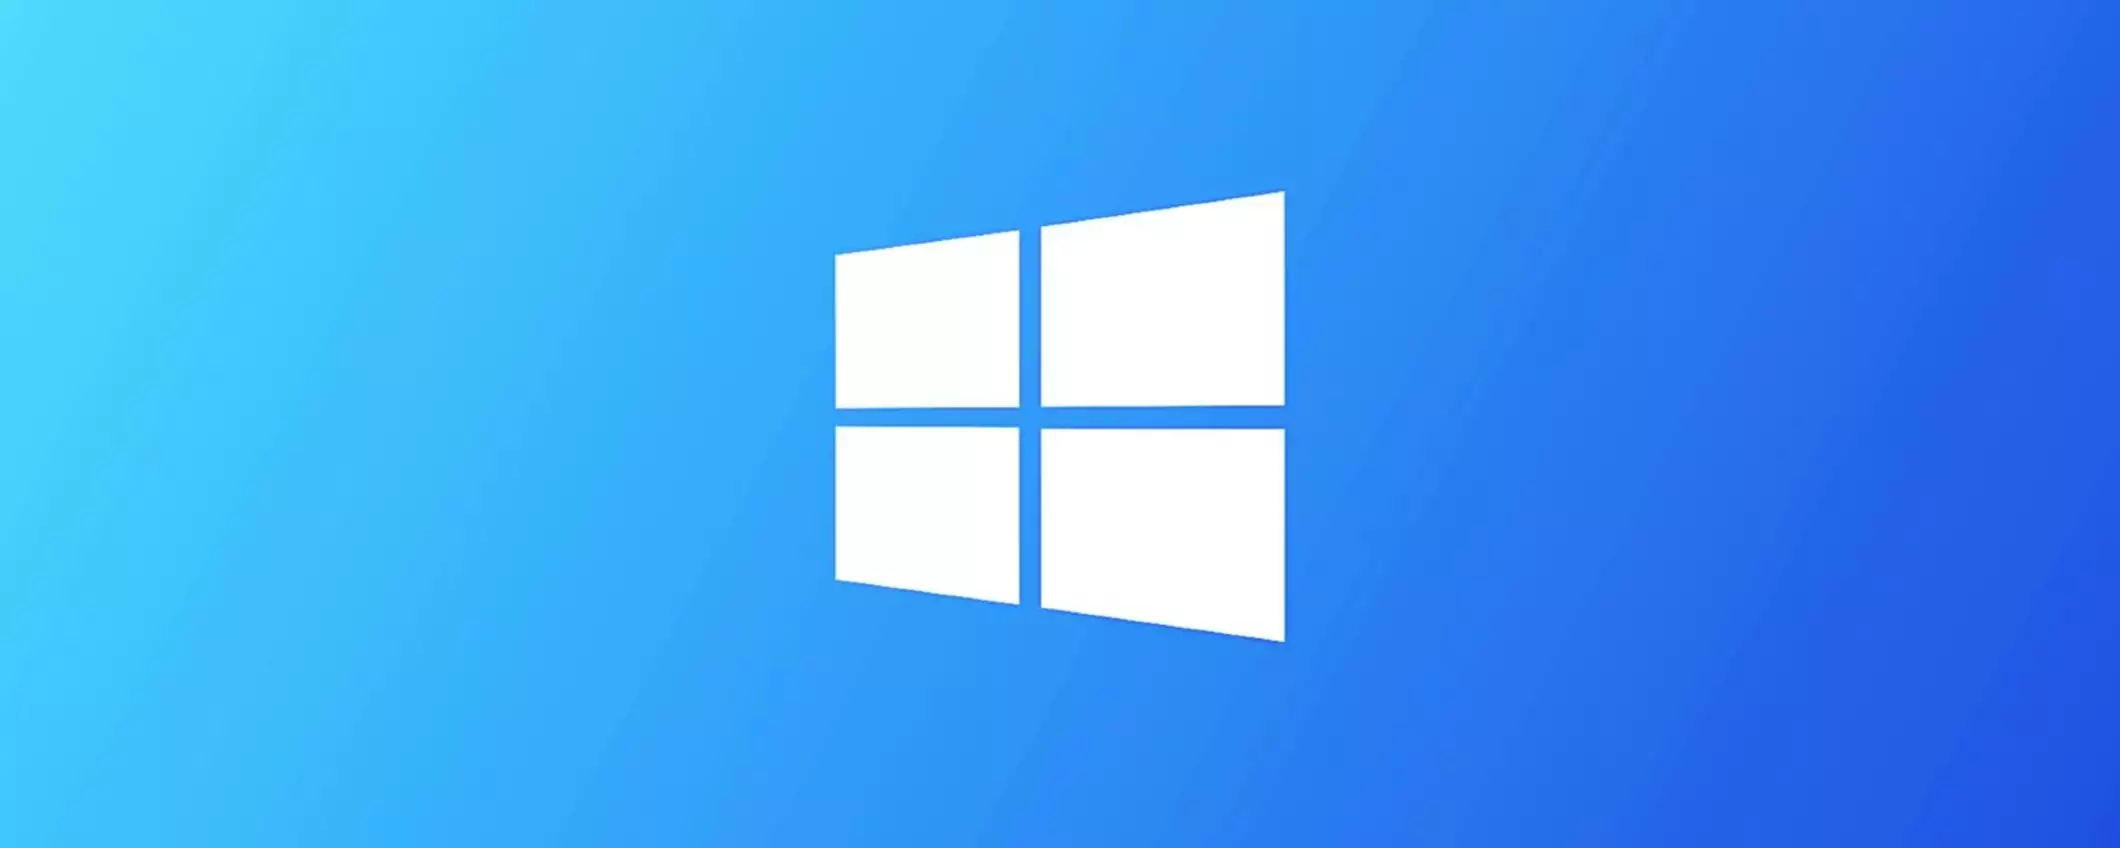 Windows 10: 240 milioni di PC in discarica a fine supporto